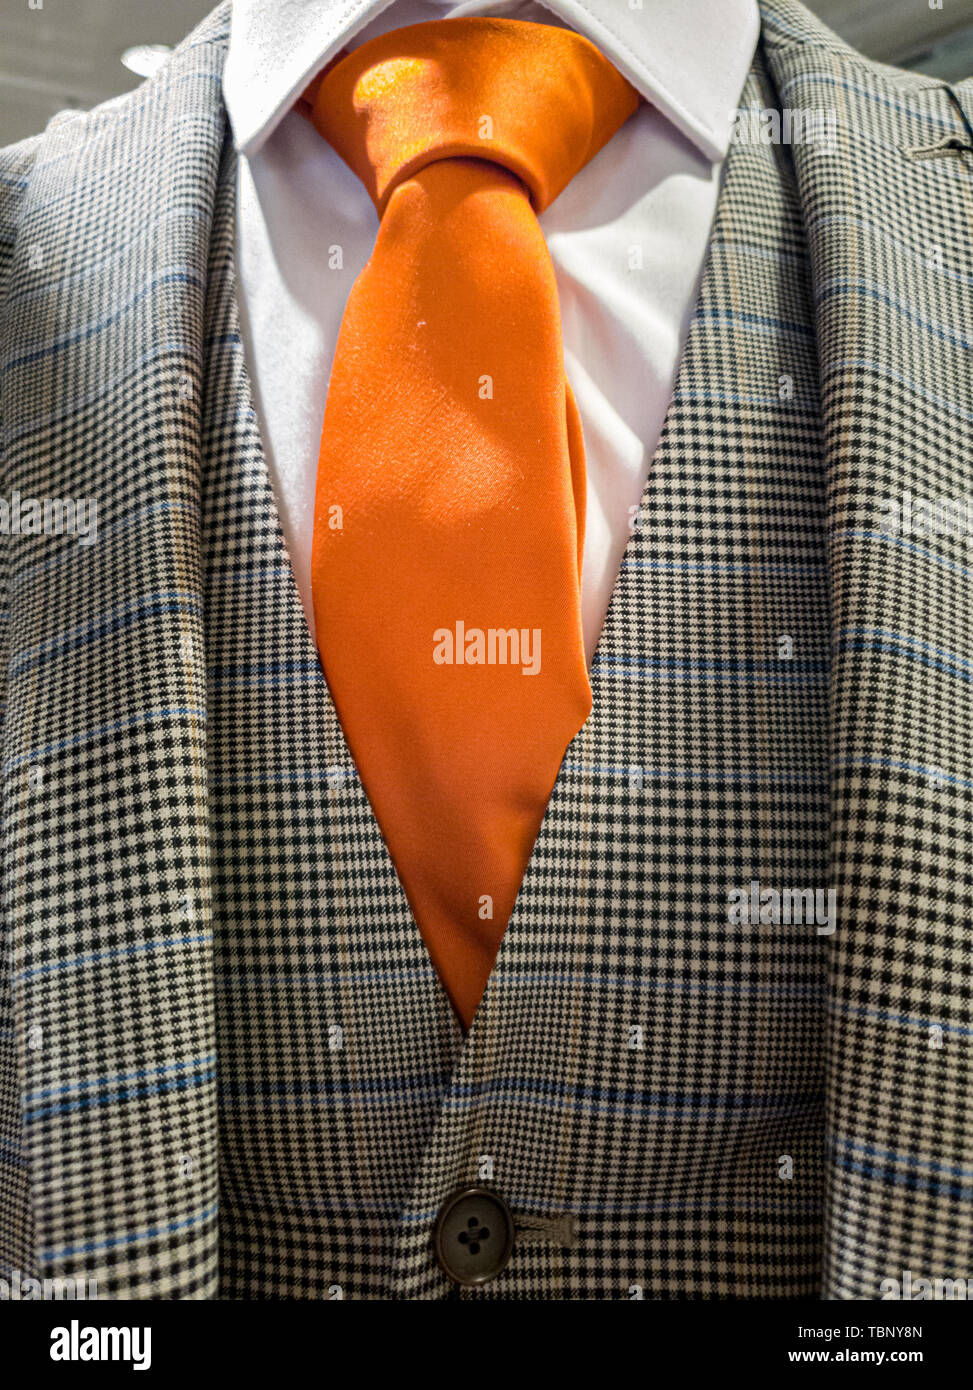 Neueste Trends in Anzug, Hemd und Krawatte Kombination - Orange tie Stockfoto